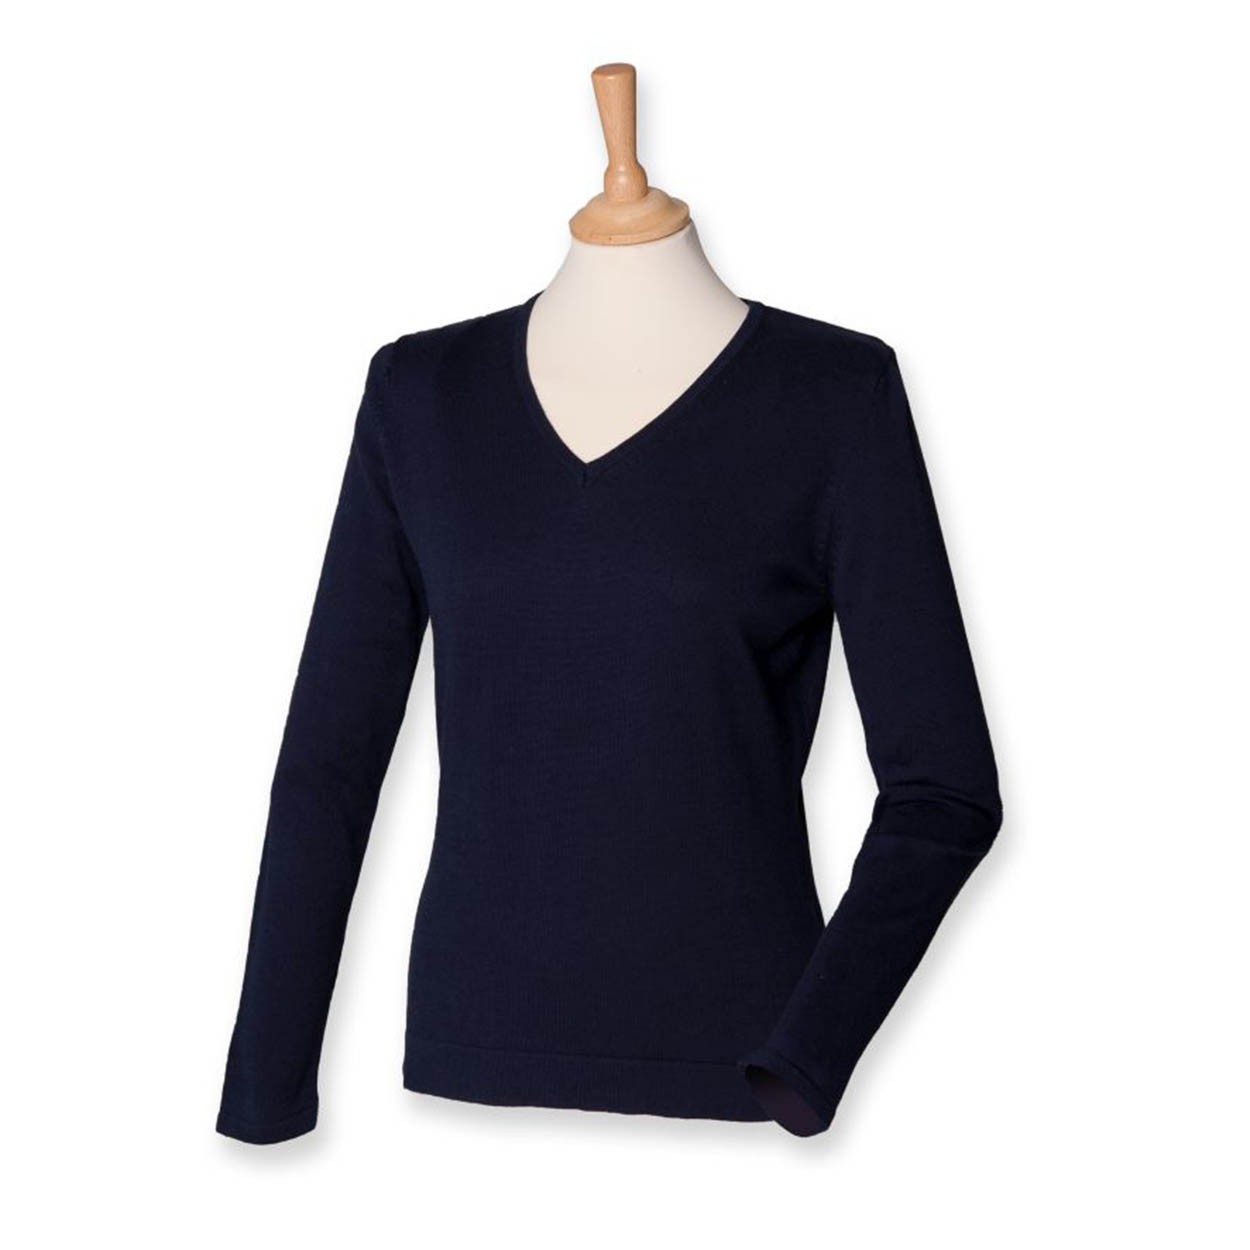 Henbury H721 Ladies V Neck Sweater - Women's Knitwear - Knitwear -  Leisurewear - Best Workwear